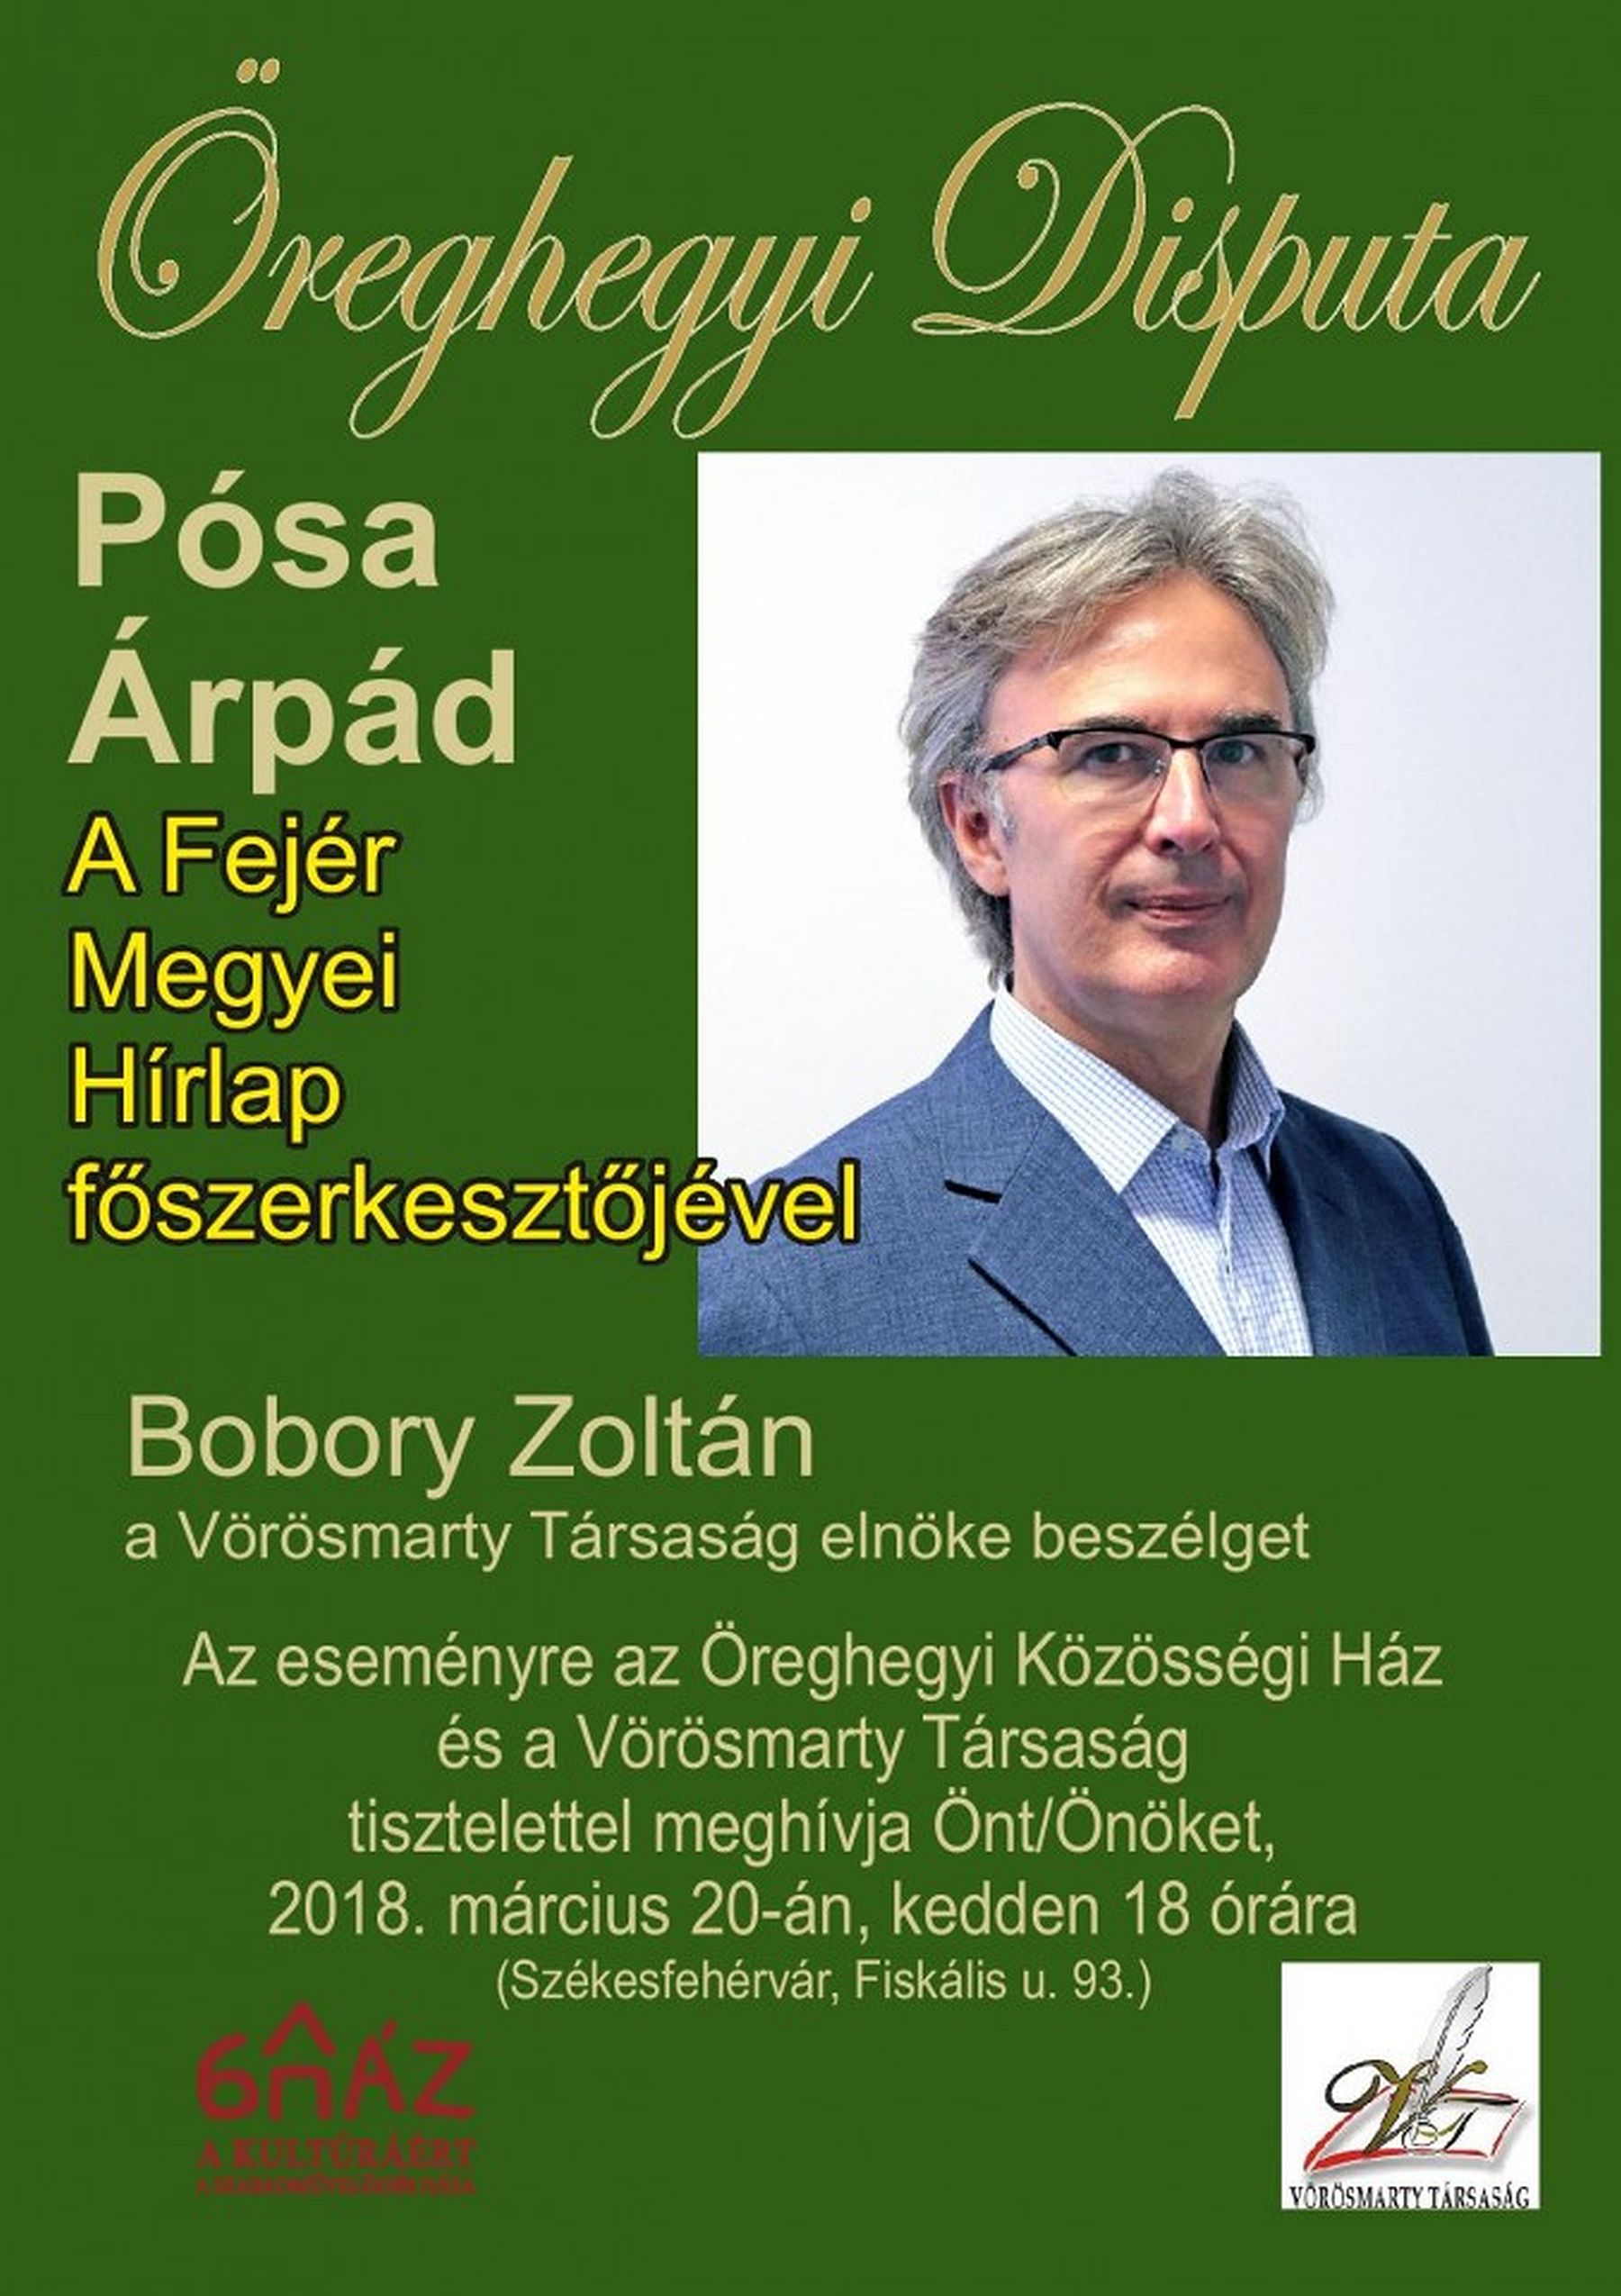 Pósa Árpád lesz az Öreghegyi Disputa vendége kedden